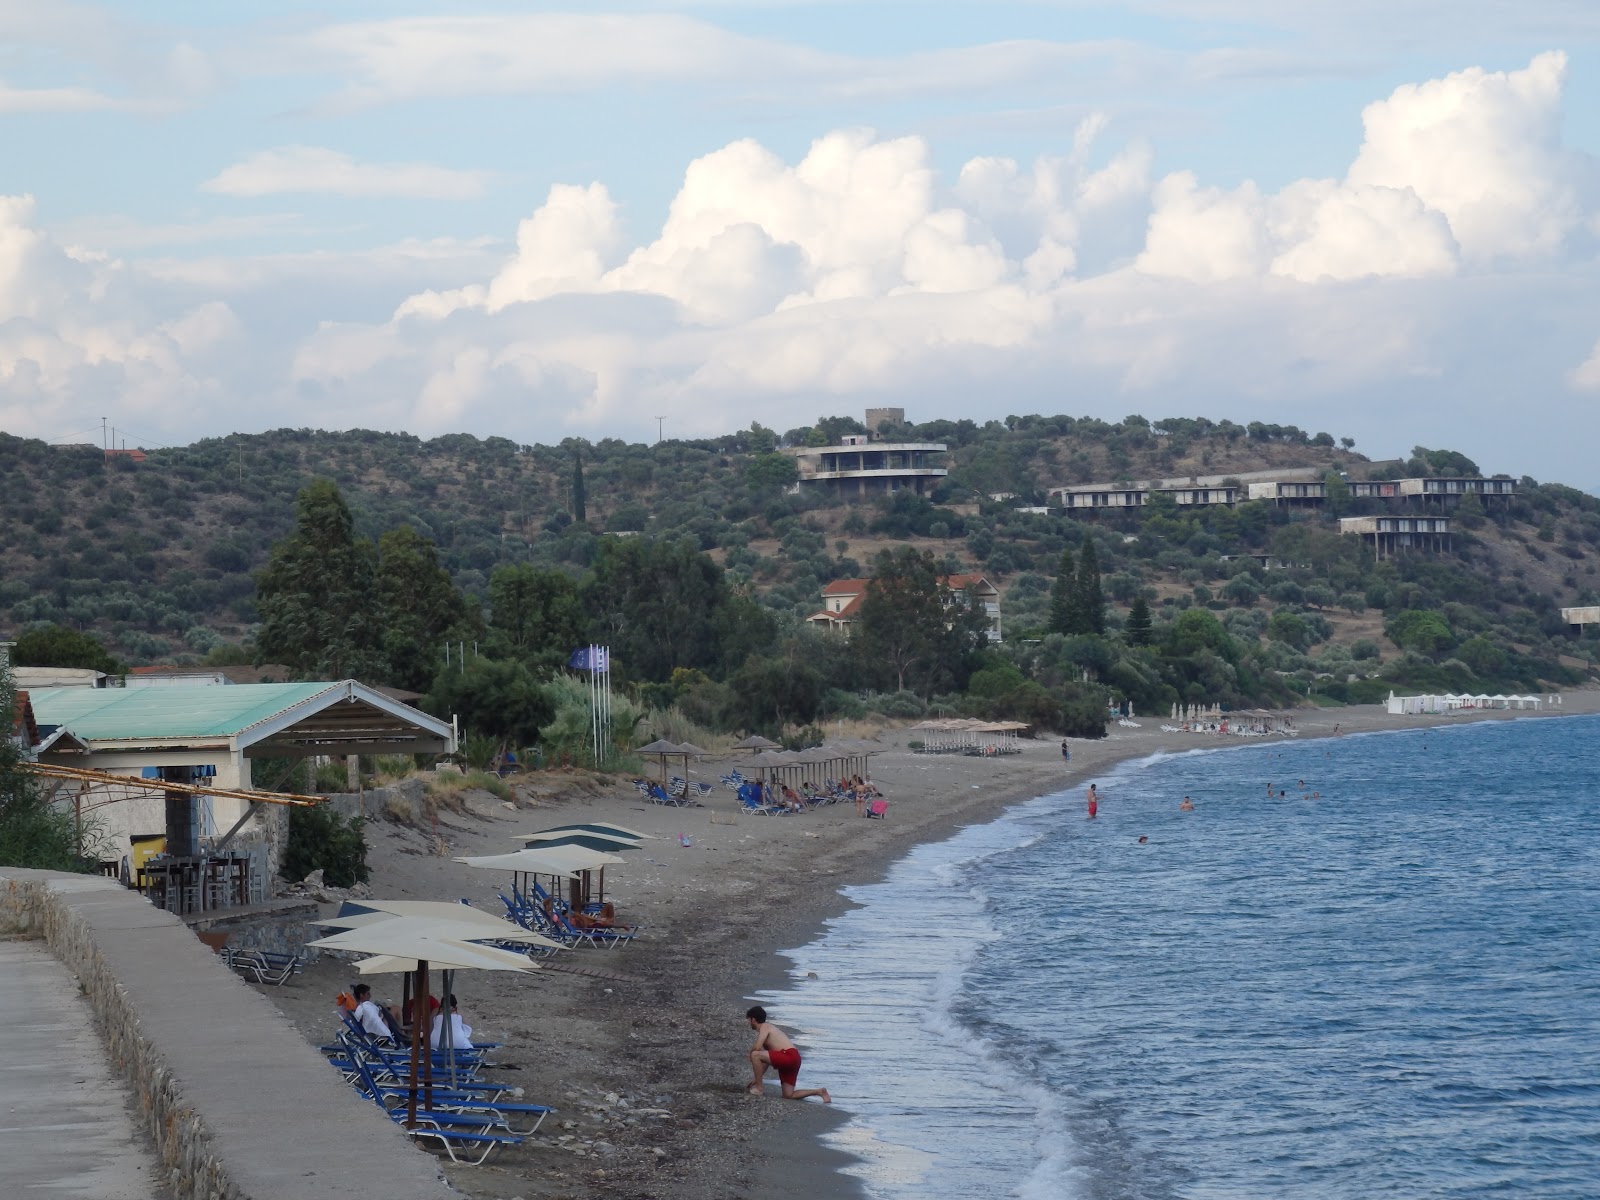 Fotografie cu Selinitsa beach zonele de facilități